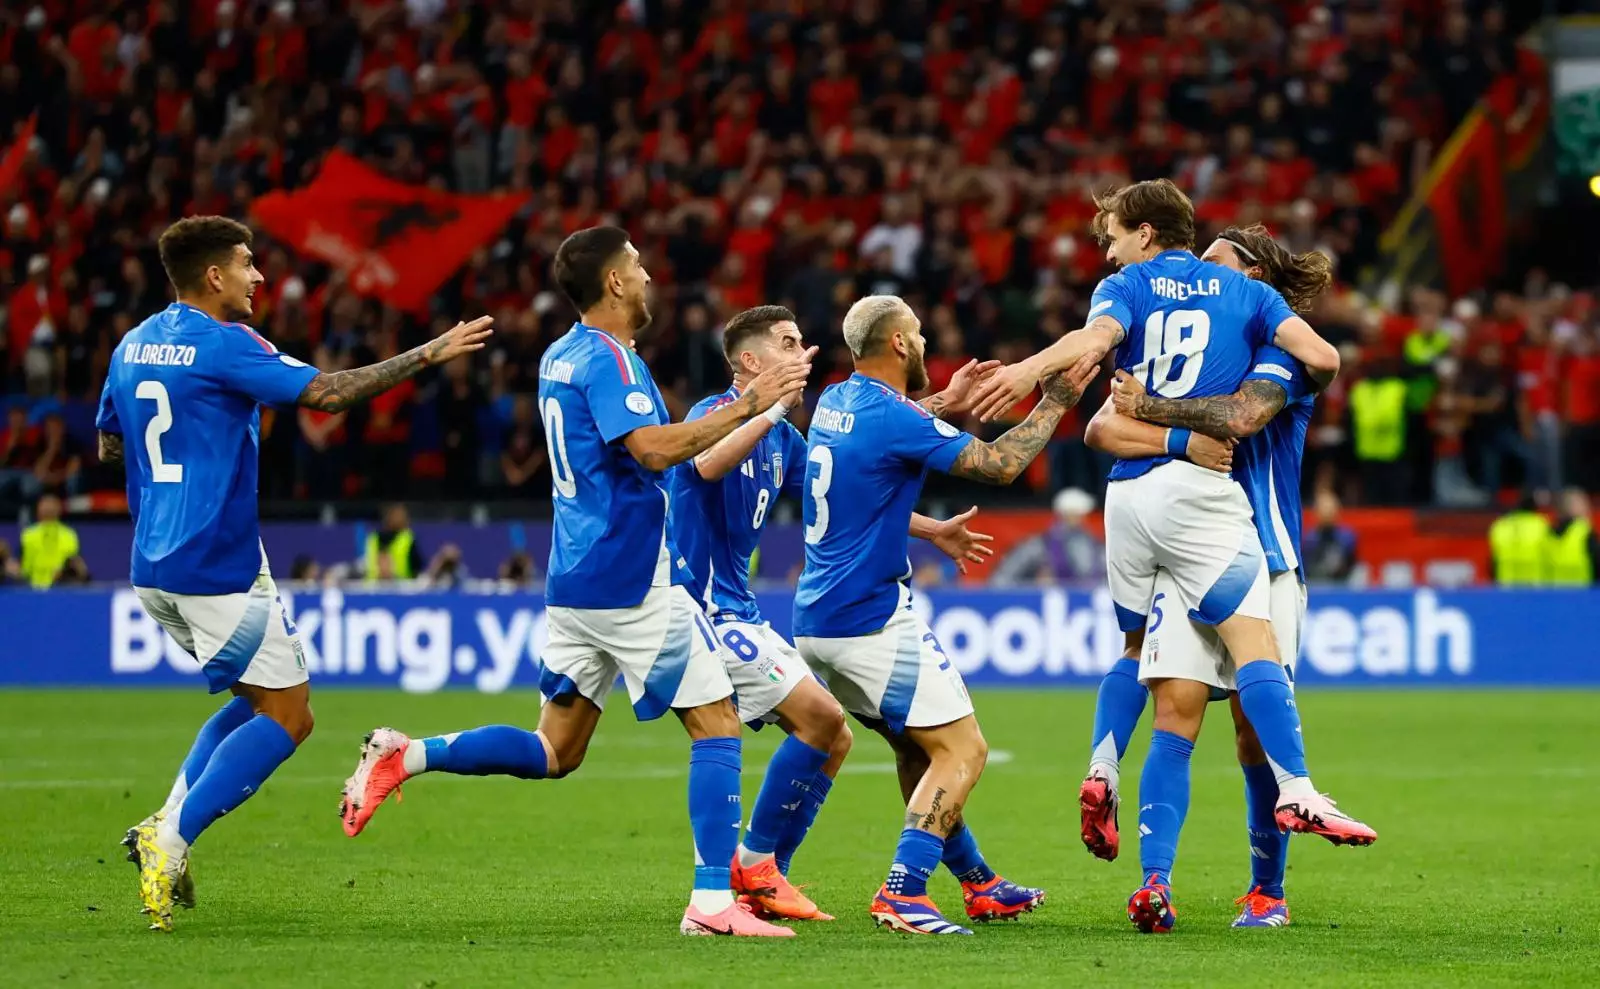 Италия рискует не попасть в плей-офф впервые за 20 лет. Интриги дня Евро